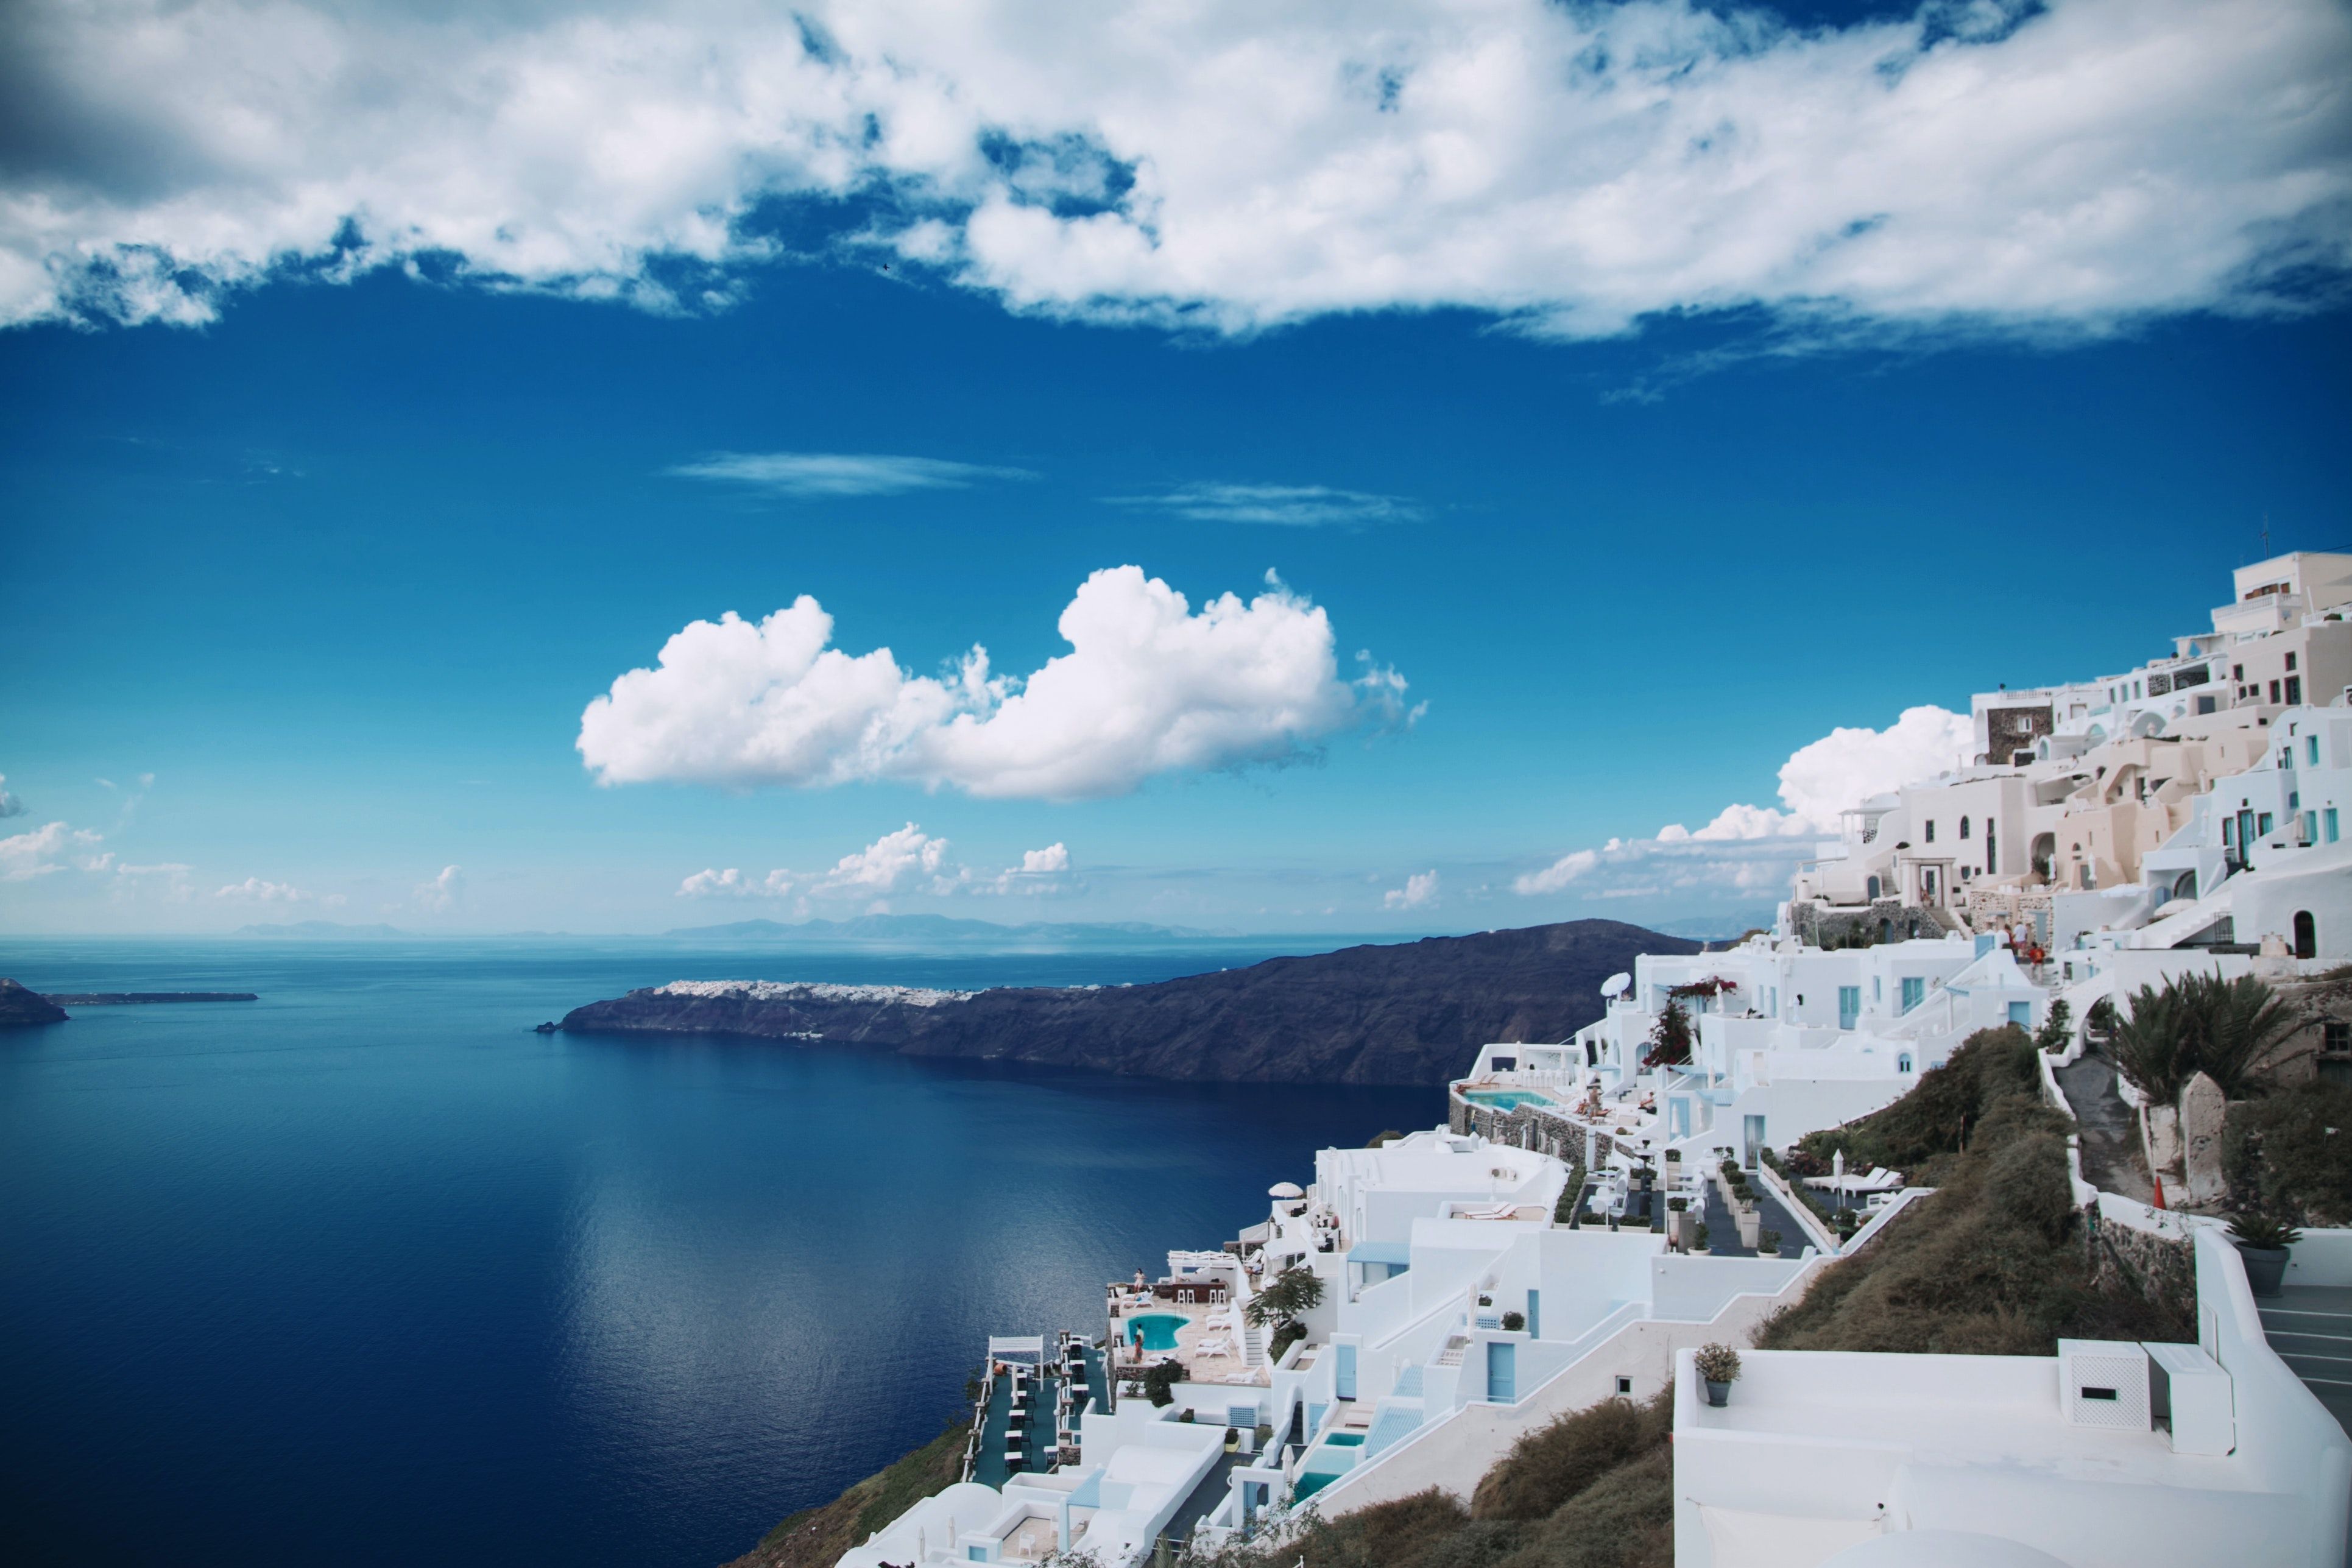  Sommer Griechenland Hintergrundbild 3861x2574. 2.Griechenland Bilder Und Fotos · Kostenlos Downloaden · Stock Fotos